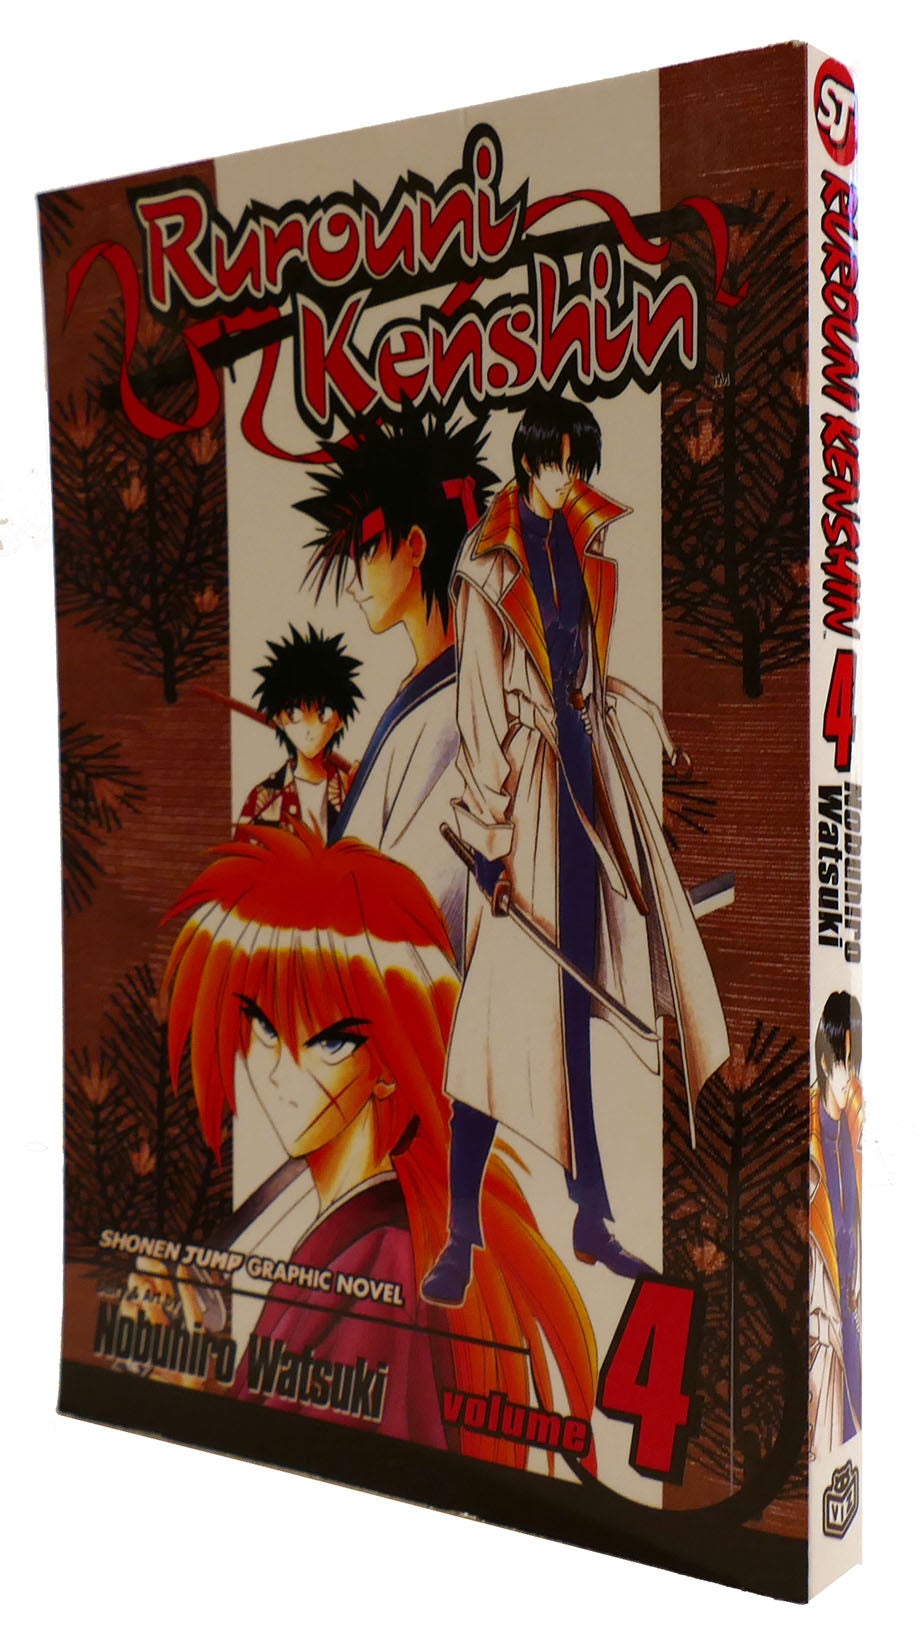 Rurouni Kenshin Volume 4 Dual Conclusions Shonen Jump Graphic Novel Edition Nobuhiro Watsuki 